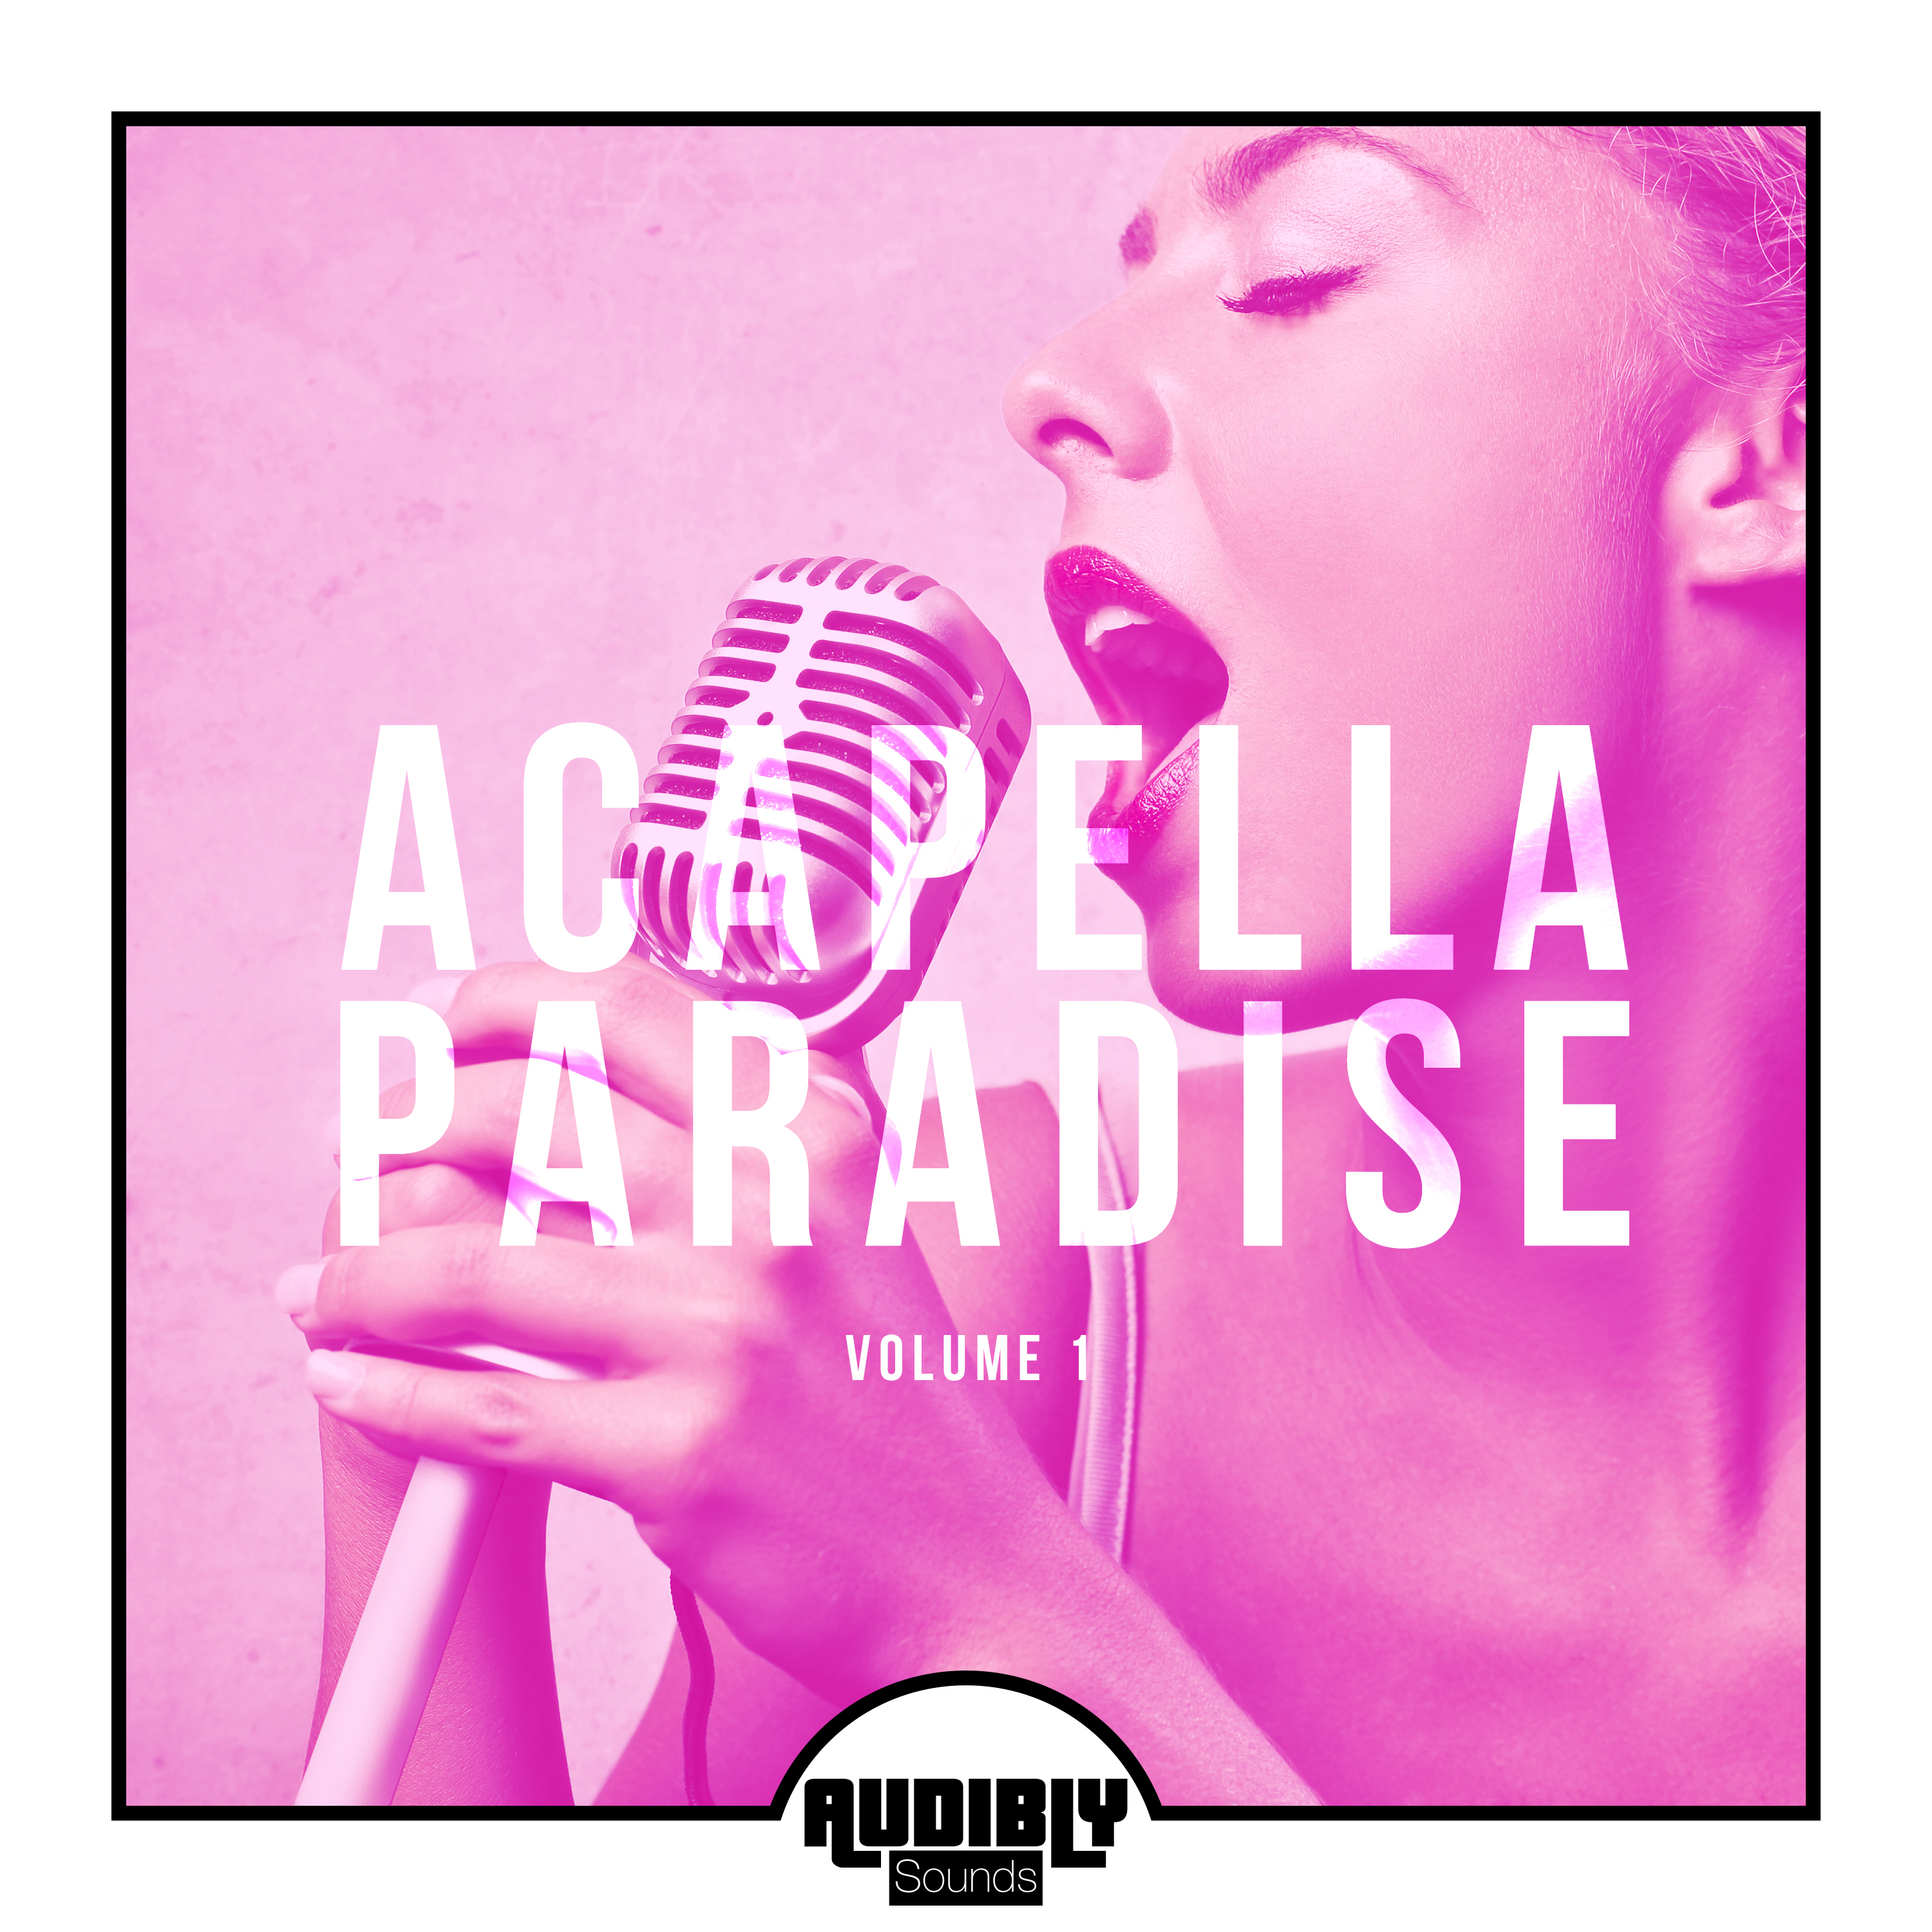 Acapella Paradise, Vol. 1